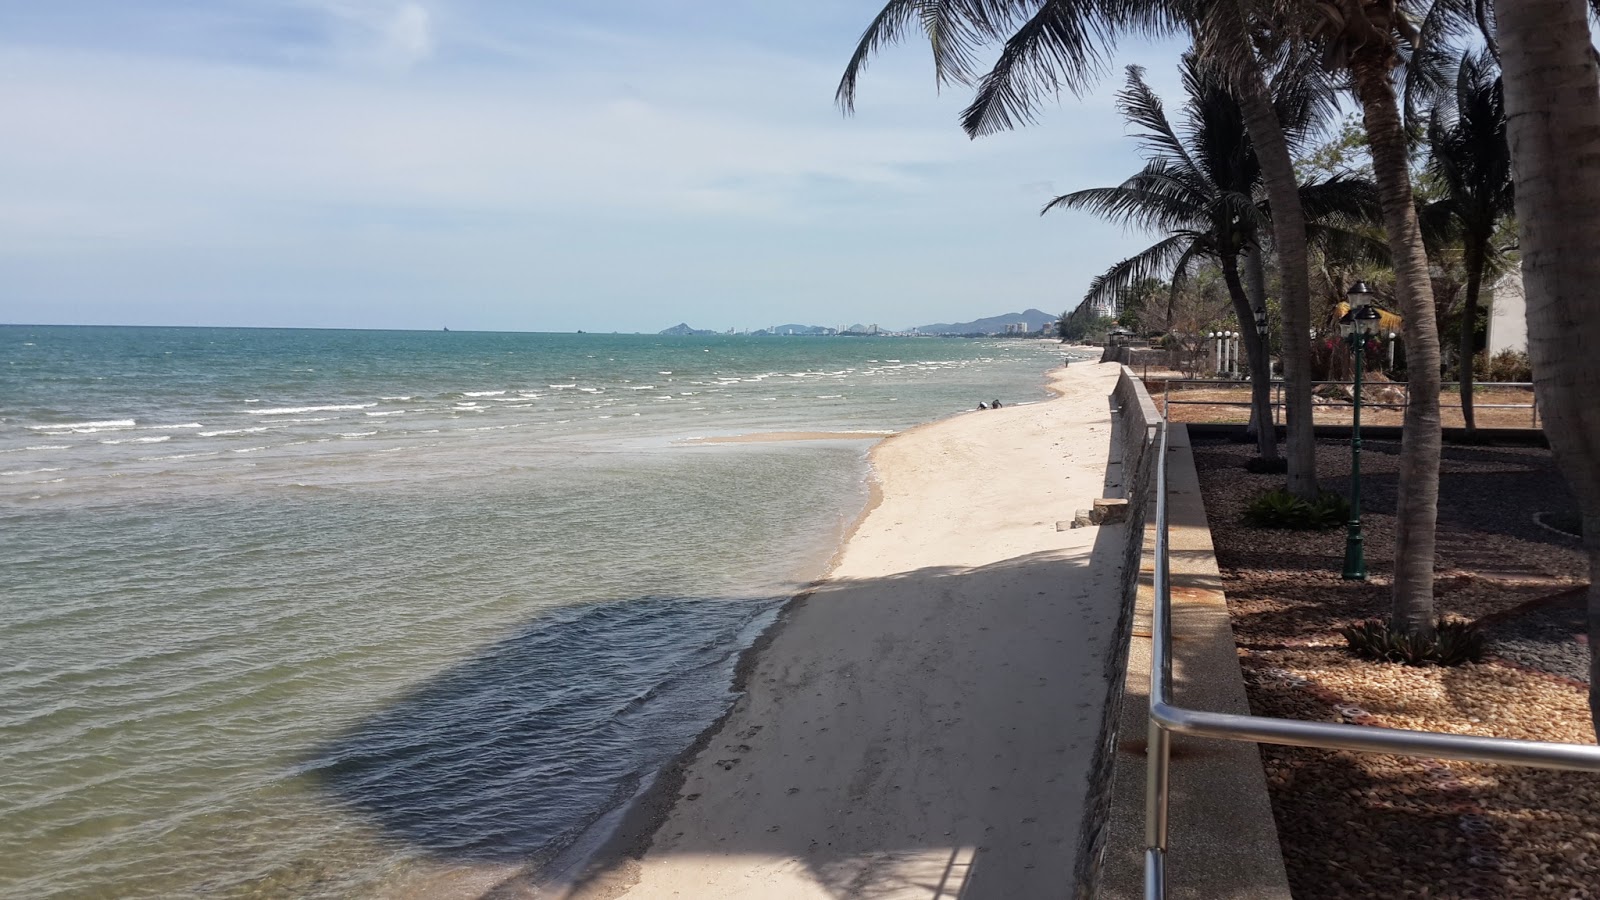 Zdjęcie Hua Hin Dusit Beach częściowo obszar hotelowy